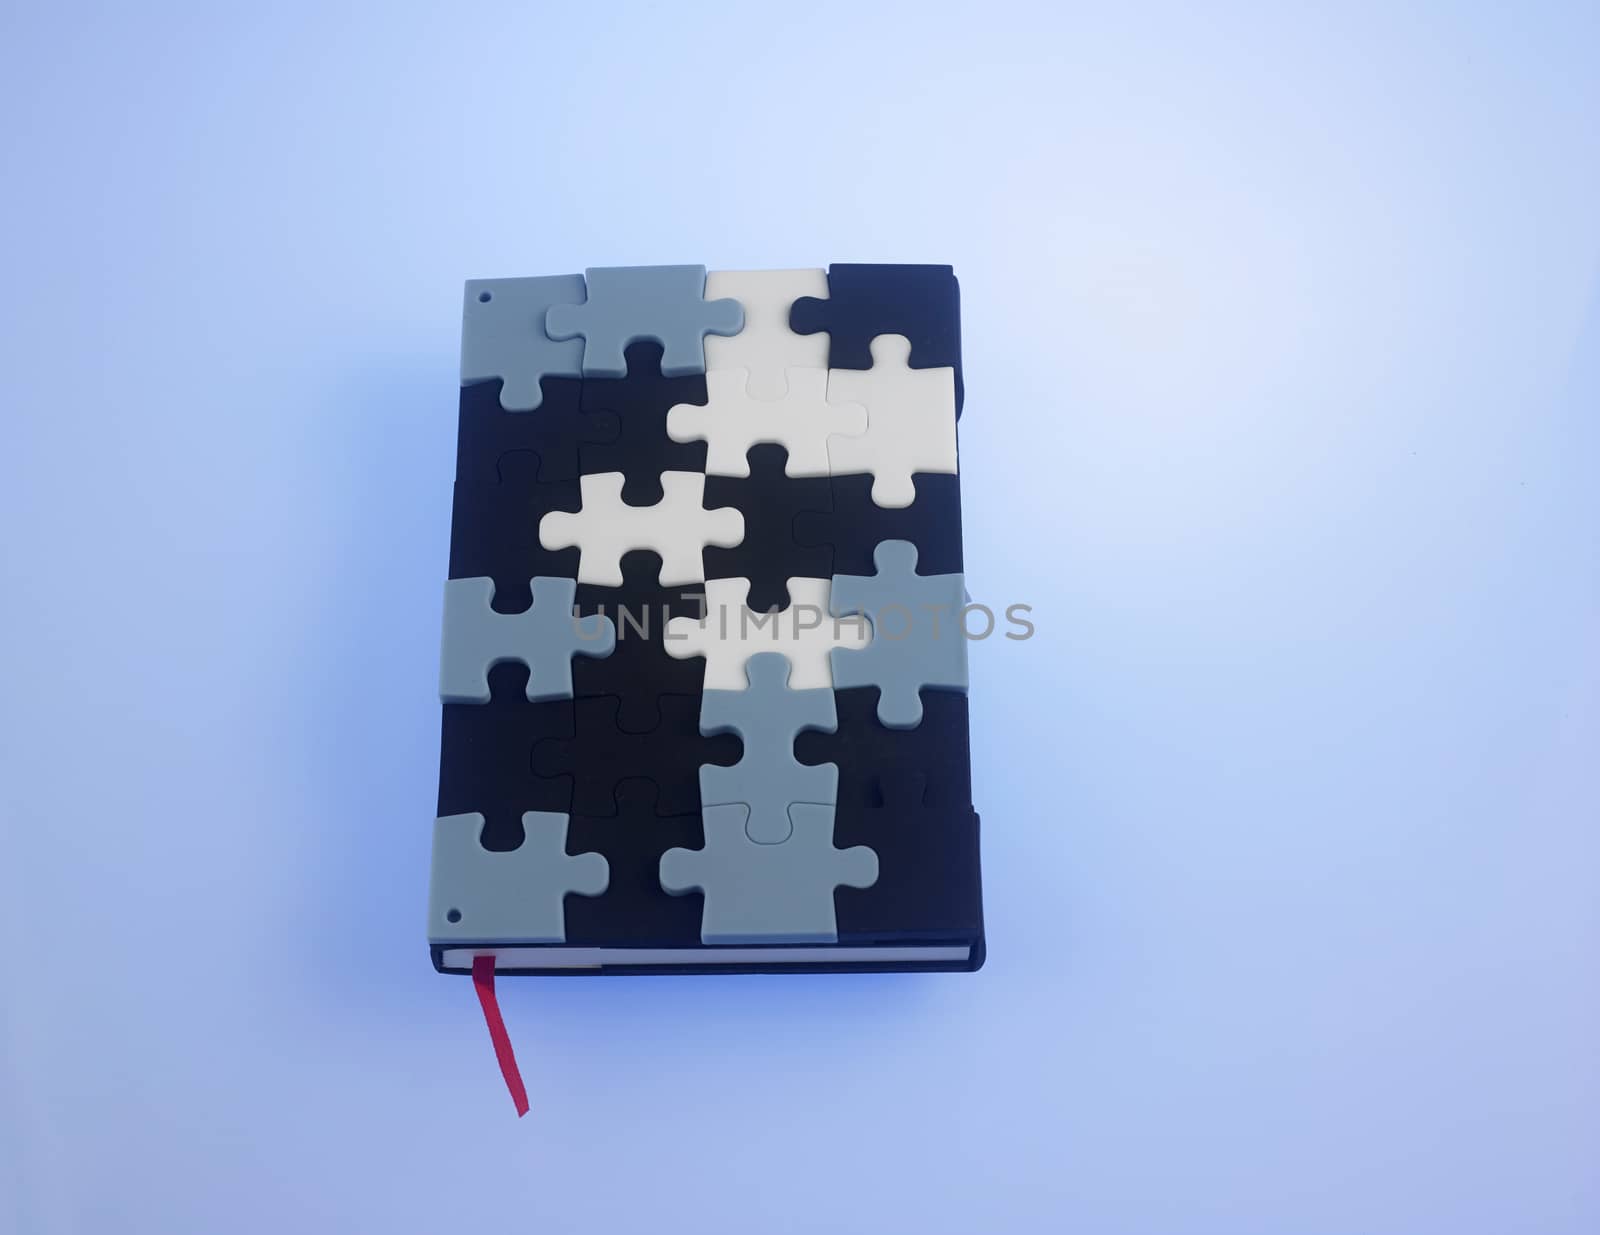 jigsaw puzzle note book by eskaylim